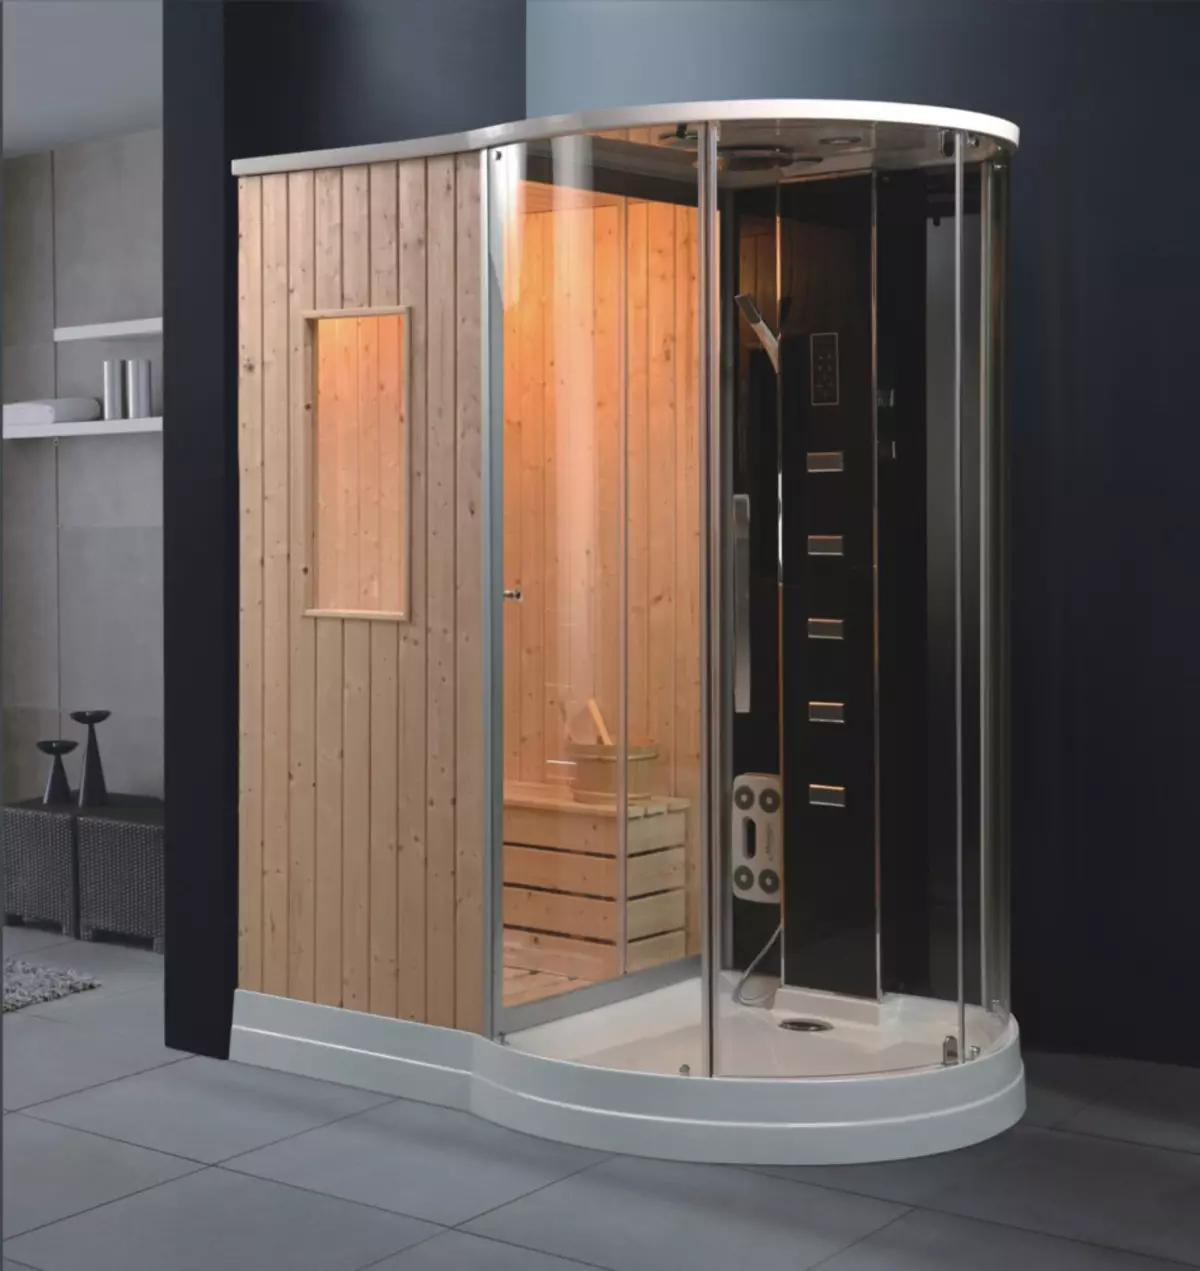 cabines de dutxa finlandesa: 80x80, 90x90 cm i altres dimensions dels models, marques i altres deto de Finlàndia 10327_23